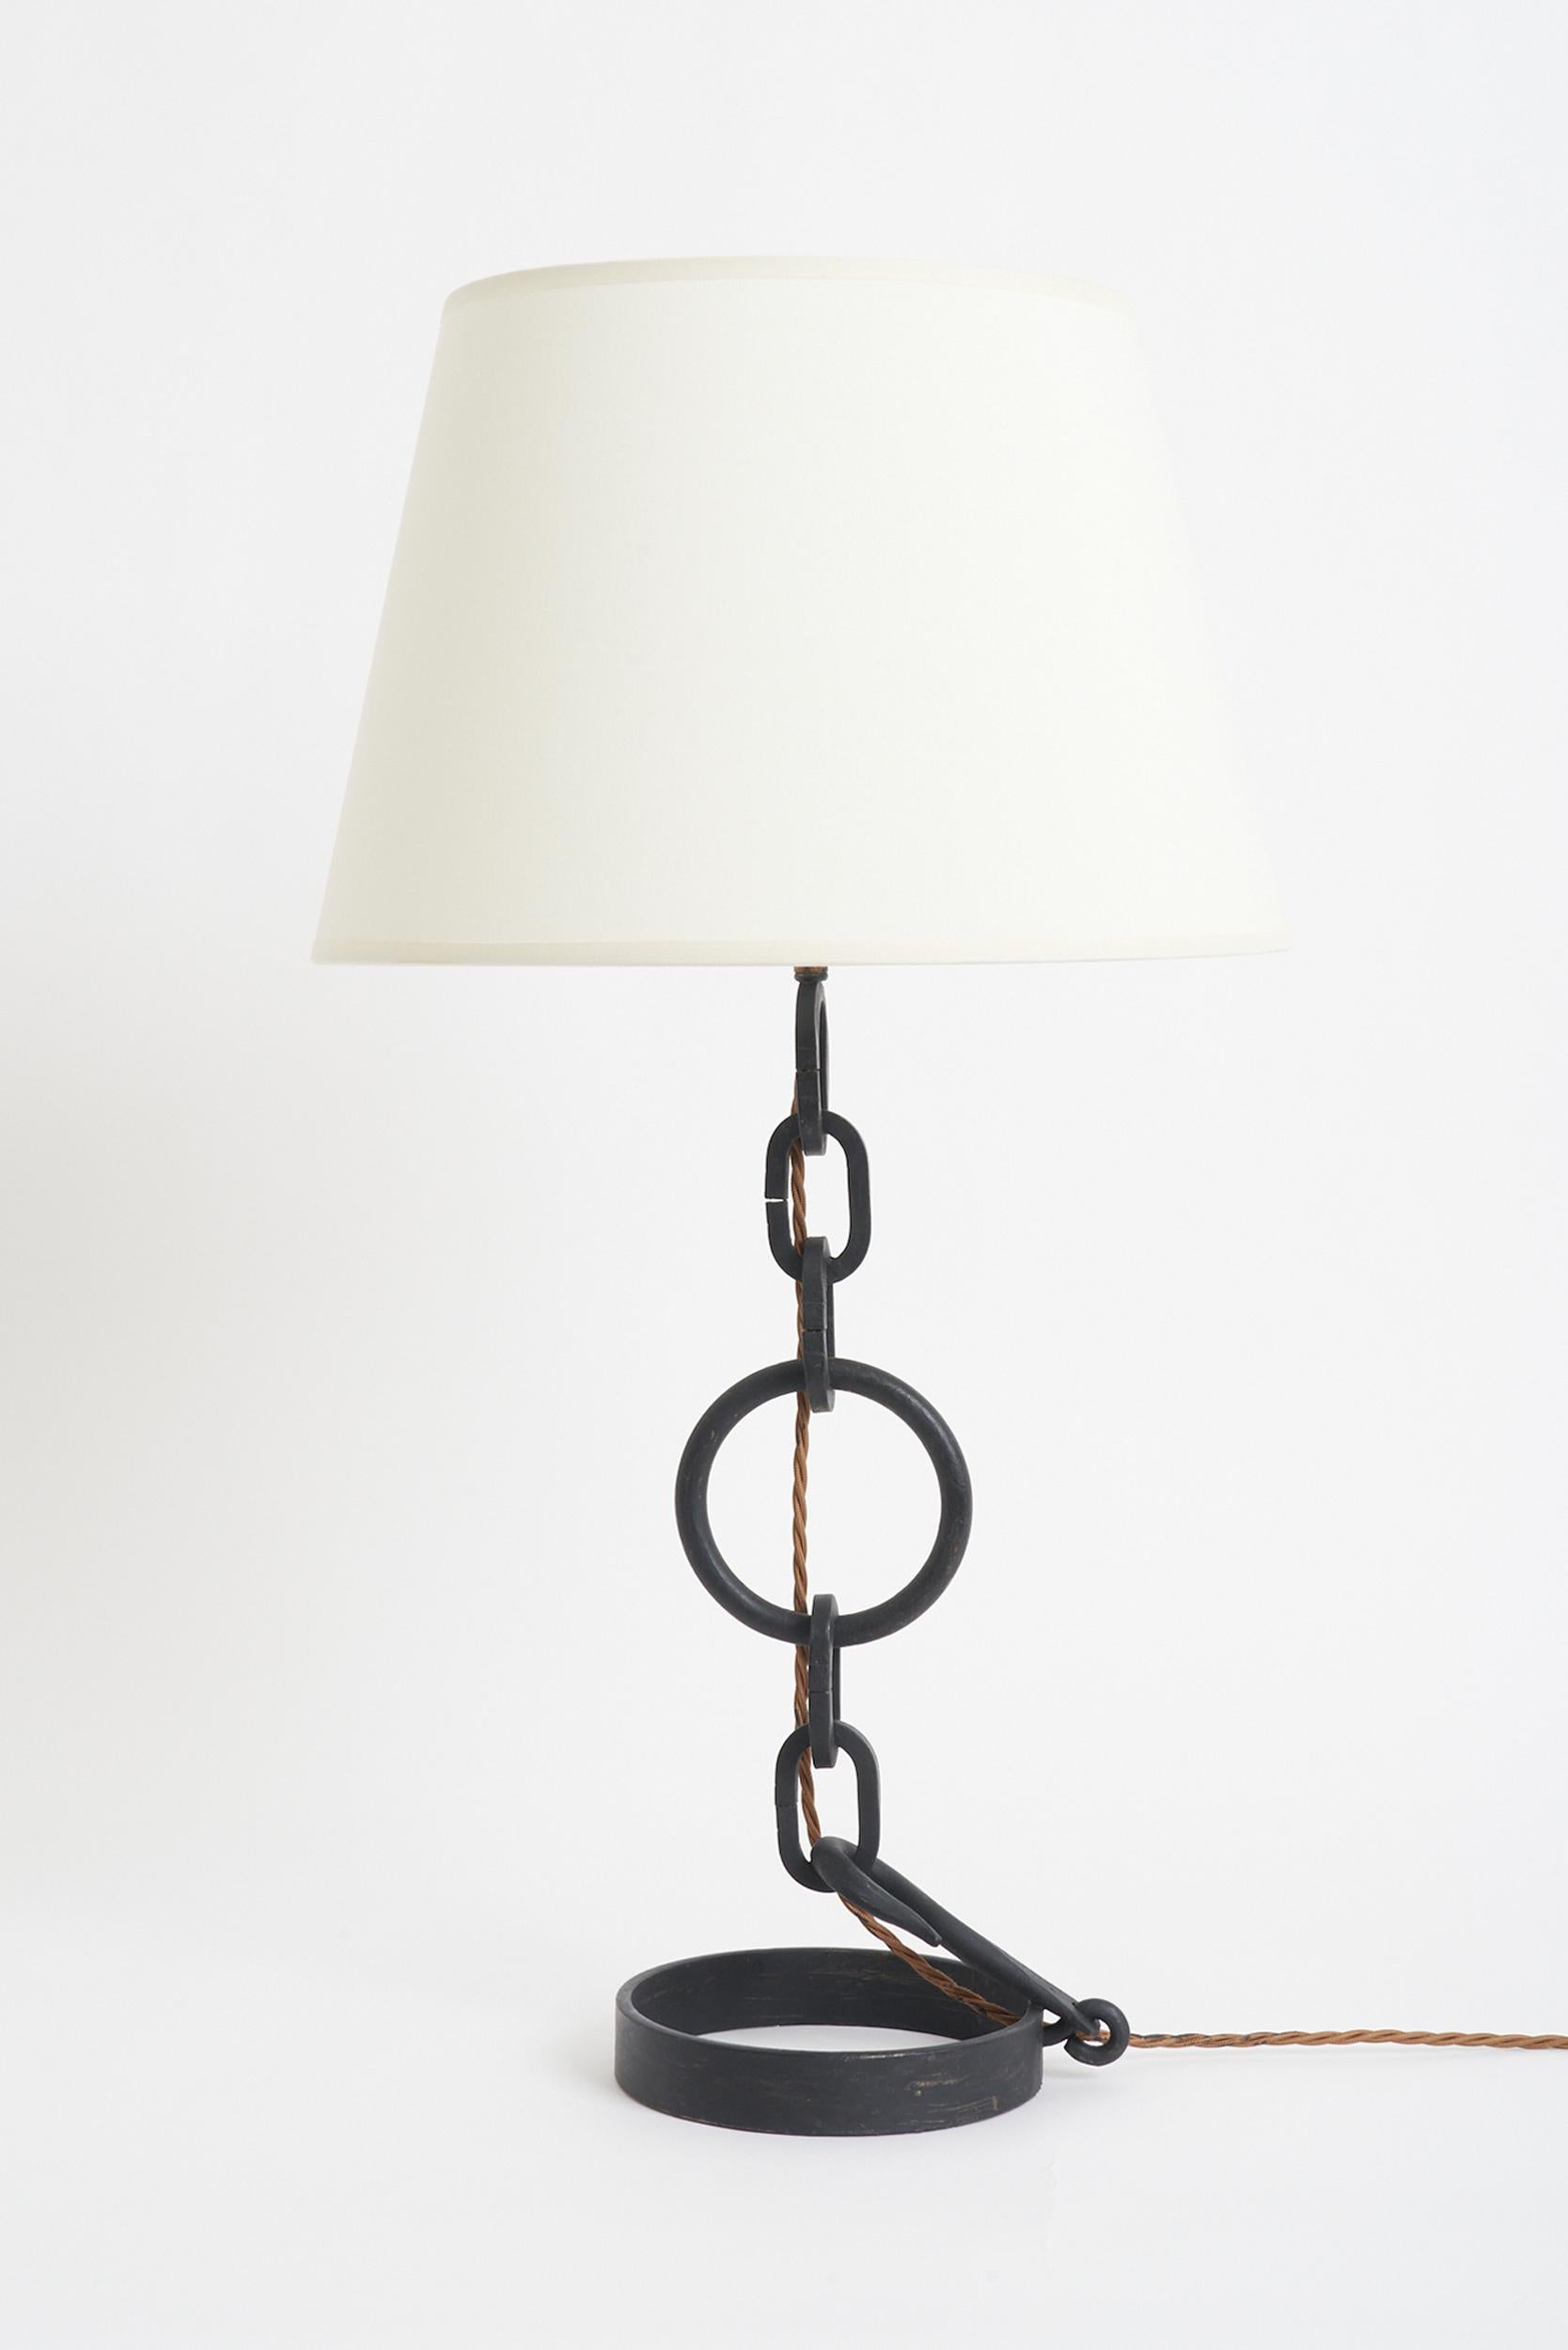 Une lampe de table en maillon de chaîne patiné noir.
France, milieu du 20e siècle. 
Avec l'abat-jour : 68 cm de haut par 36 cm de diamètre 
Base de la lampe uniquement : 48 cm de haut par 16 cm de diamètre